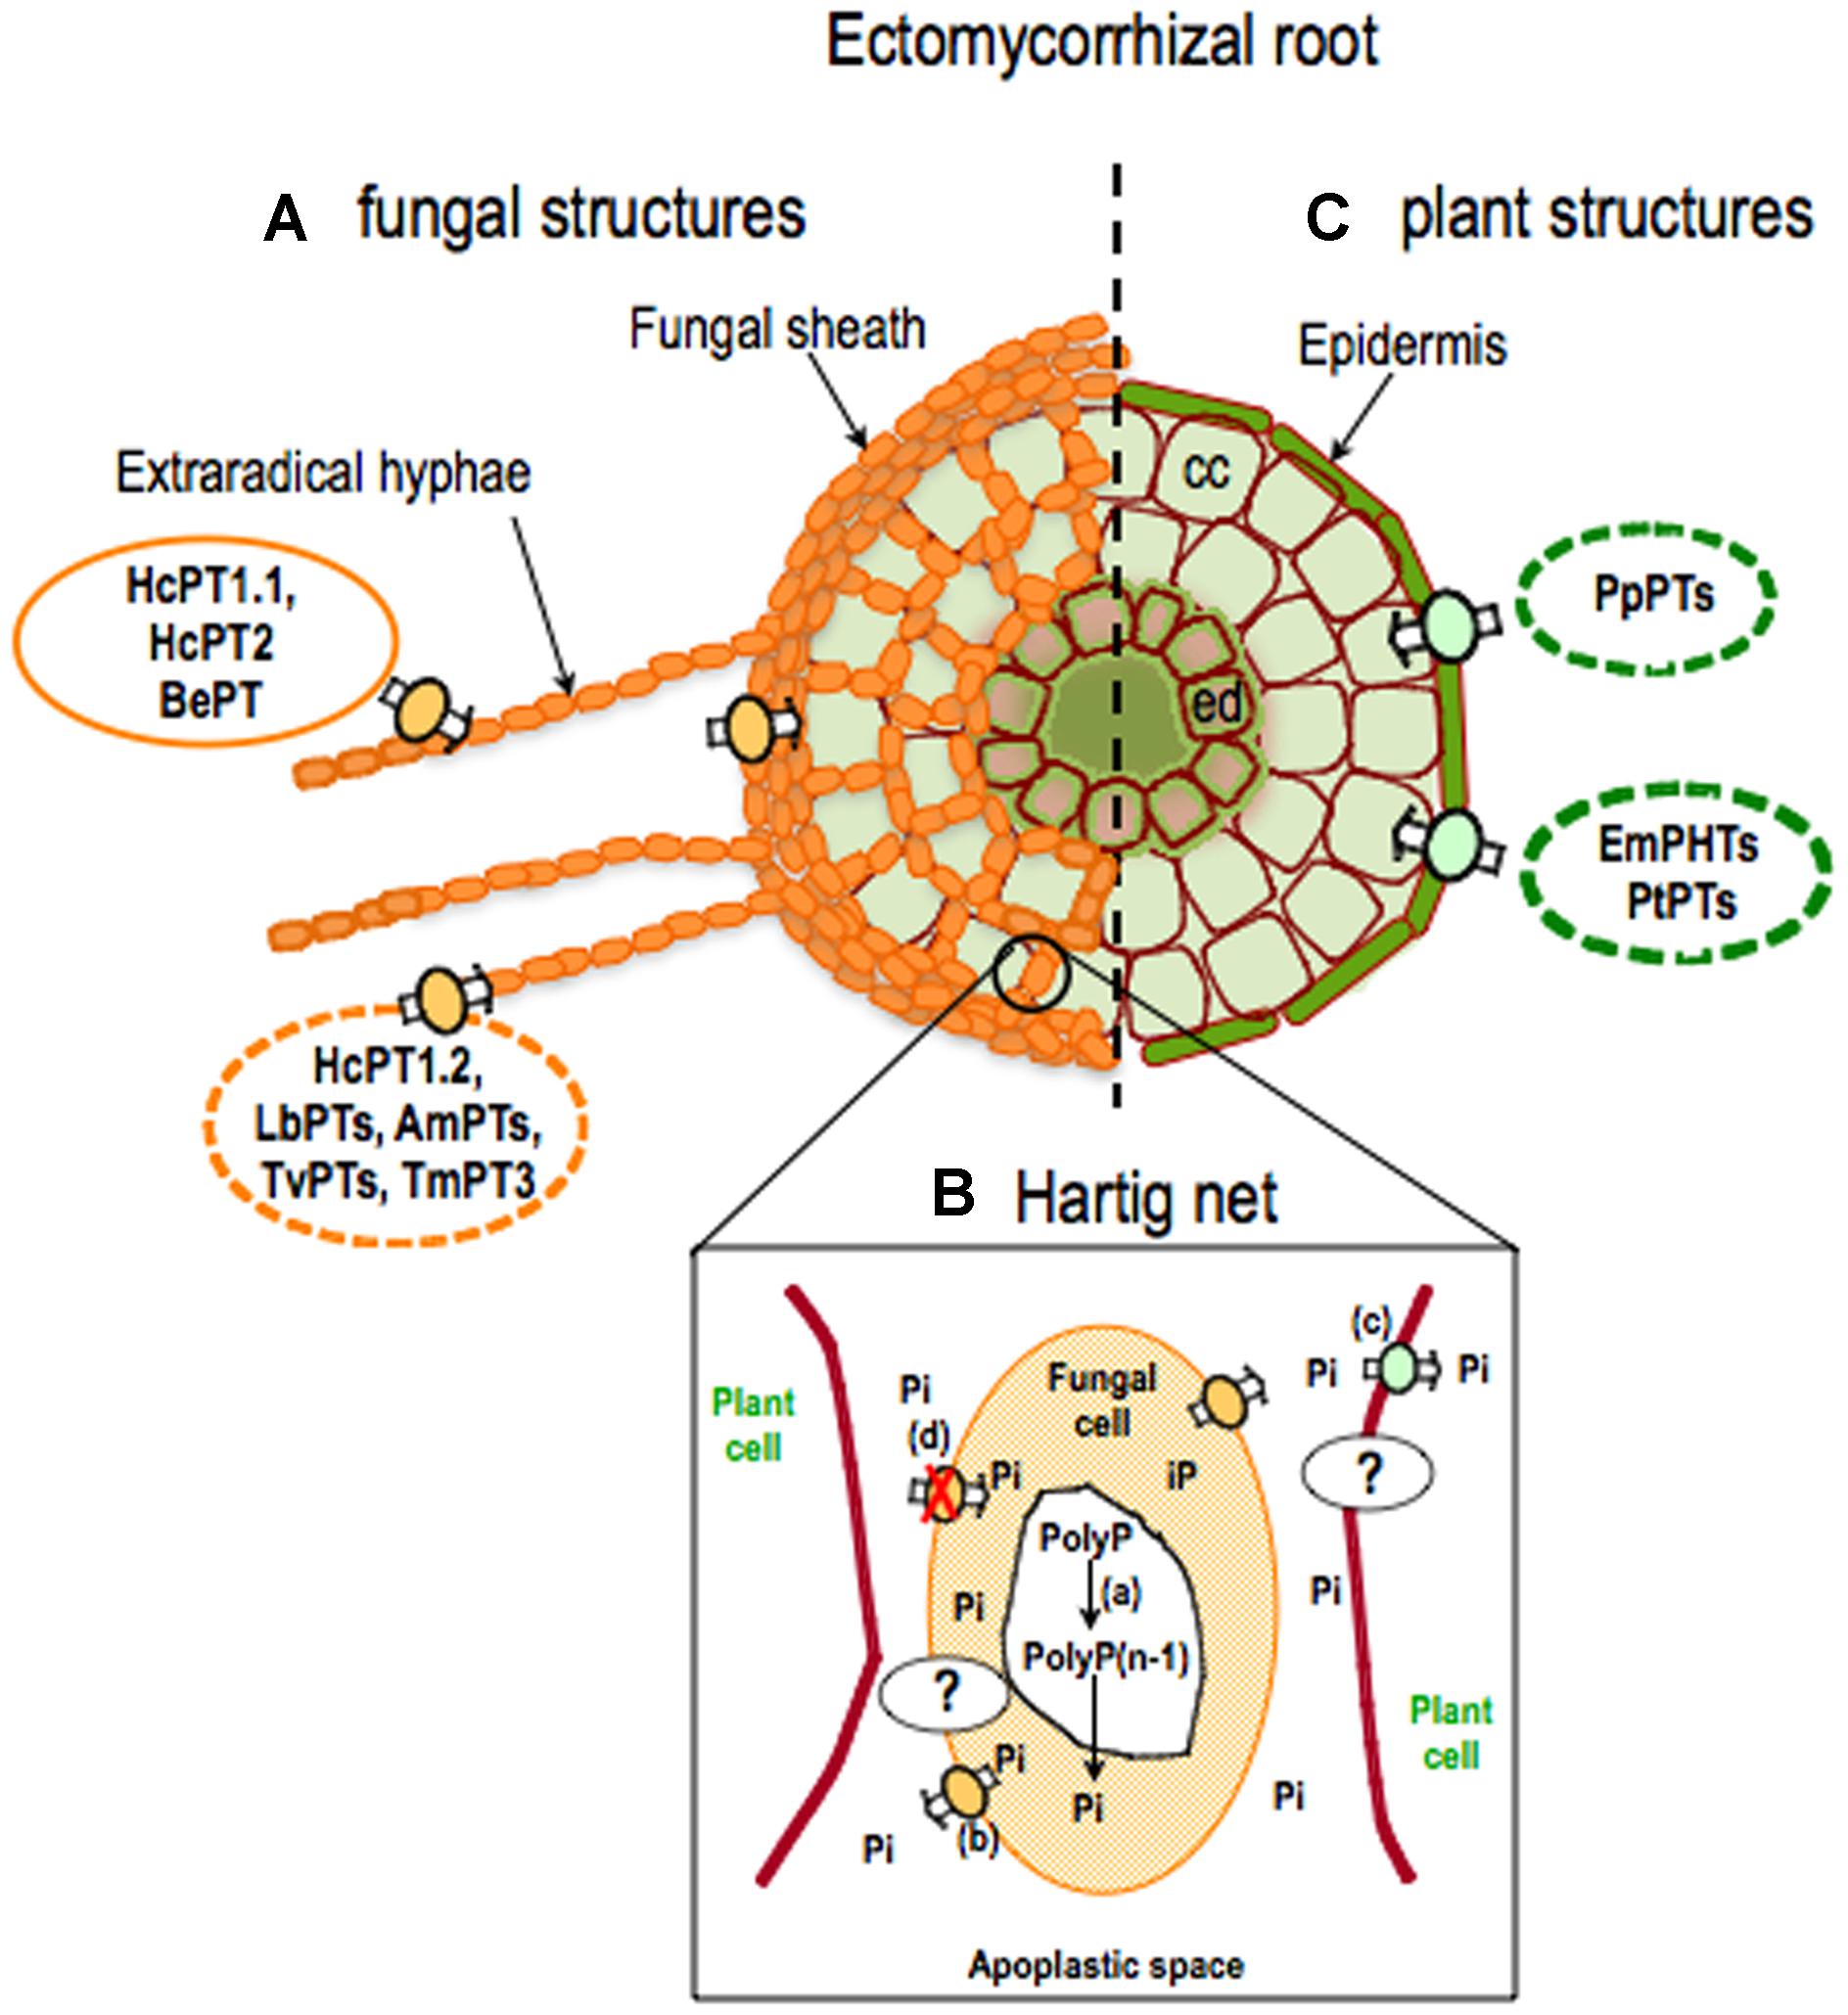 What is ectomycorrhizal fungi?